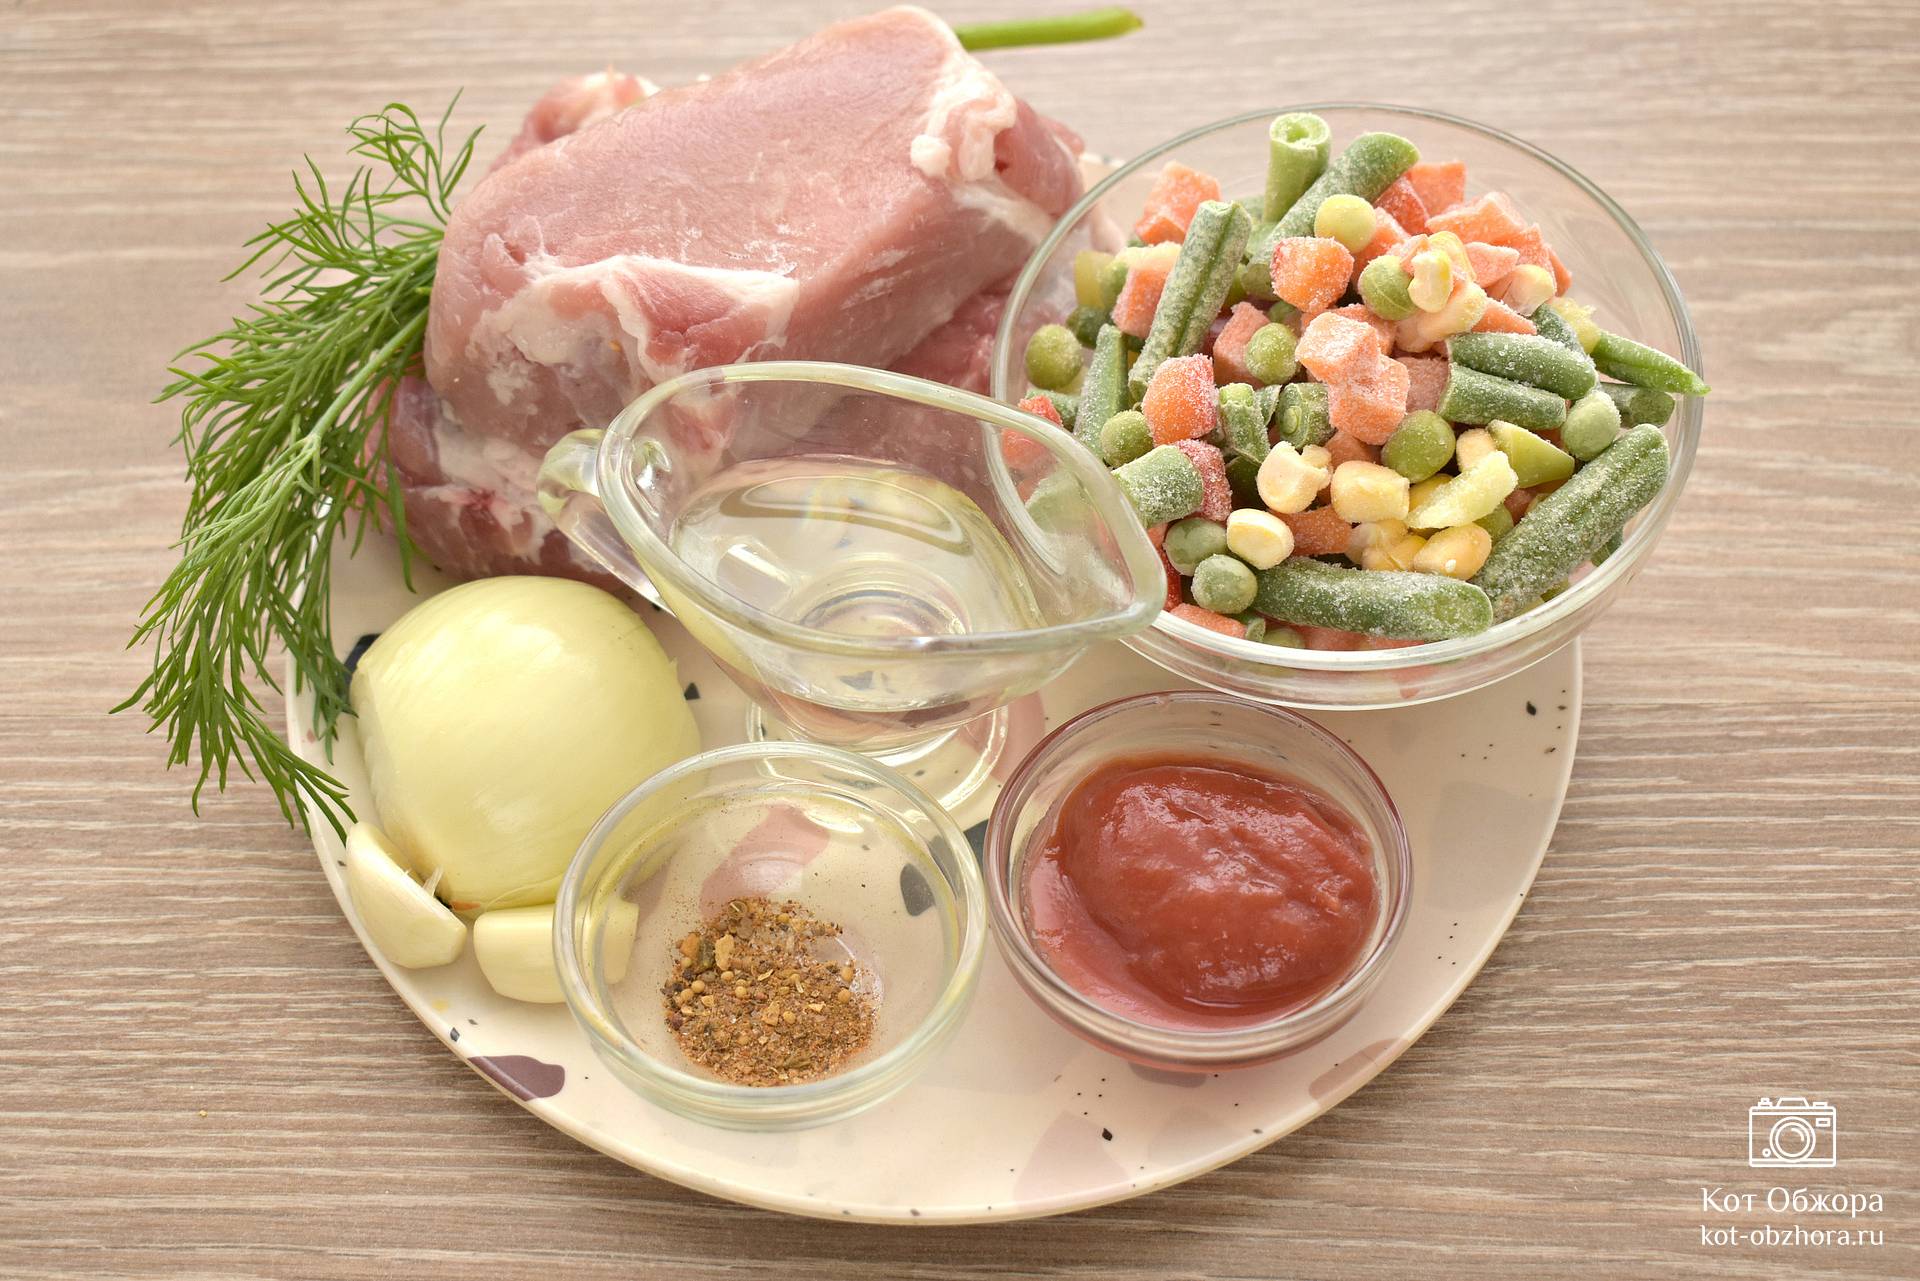 Свинина тушеная с овощами на сковороде, рецепт с фото | Волшебная натяжныепотолкибрянск.рф